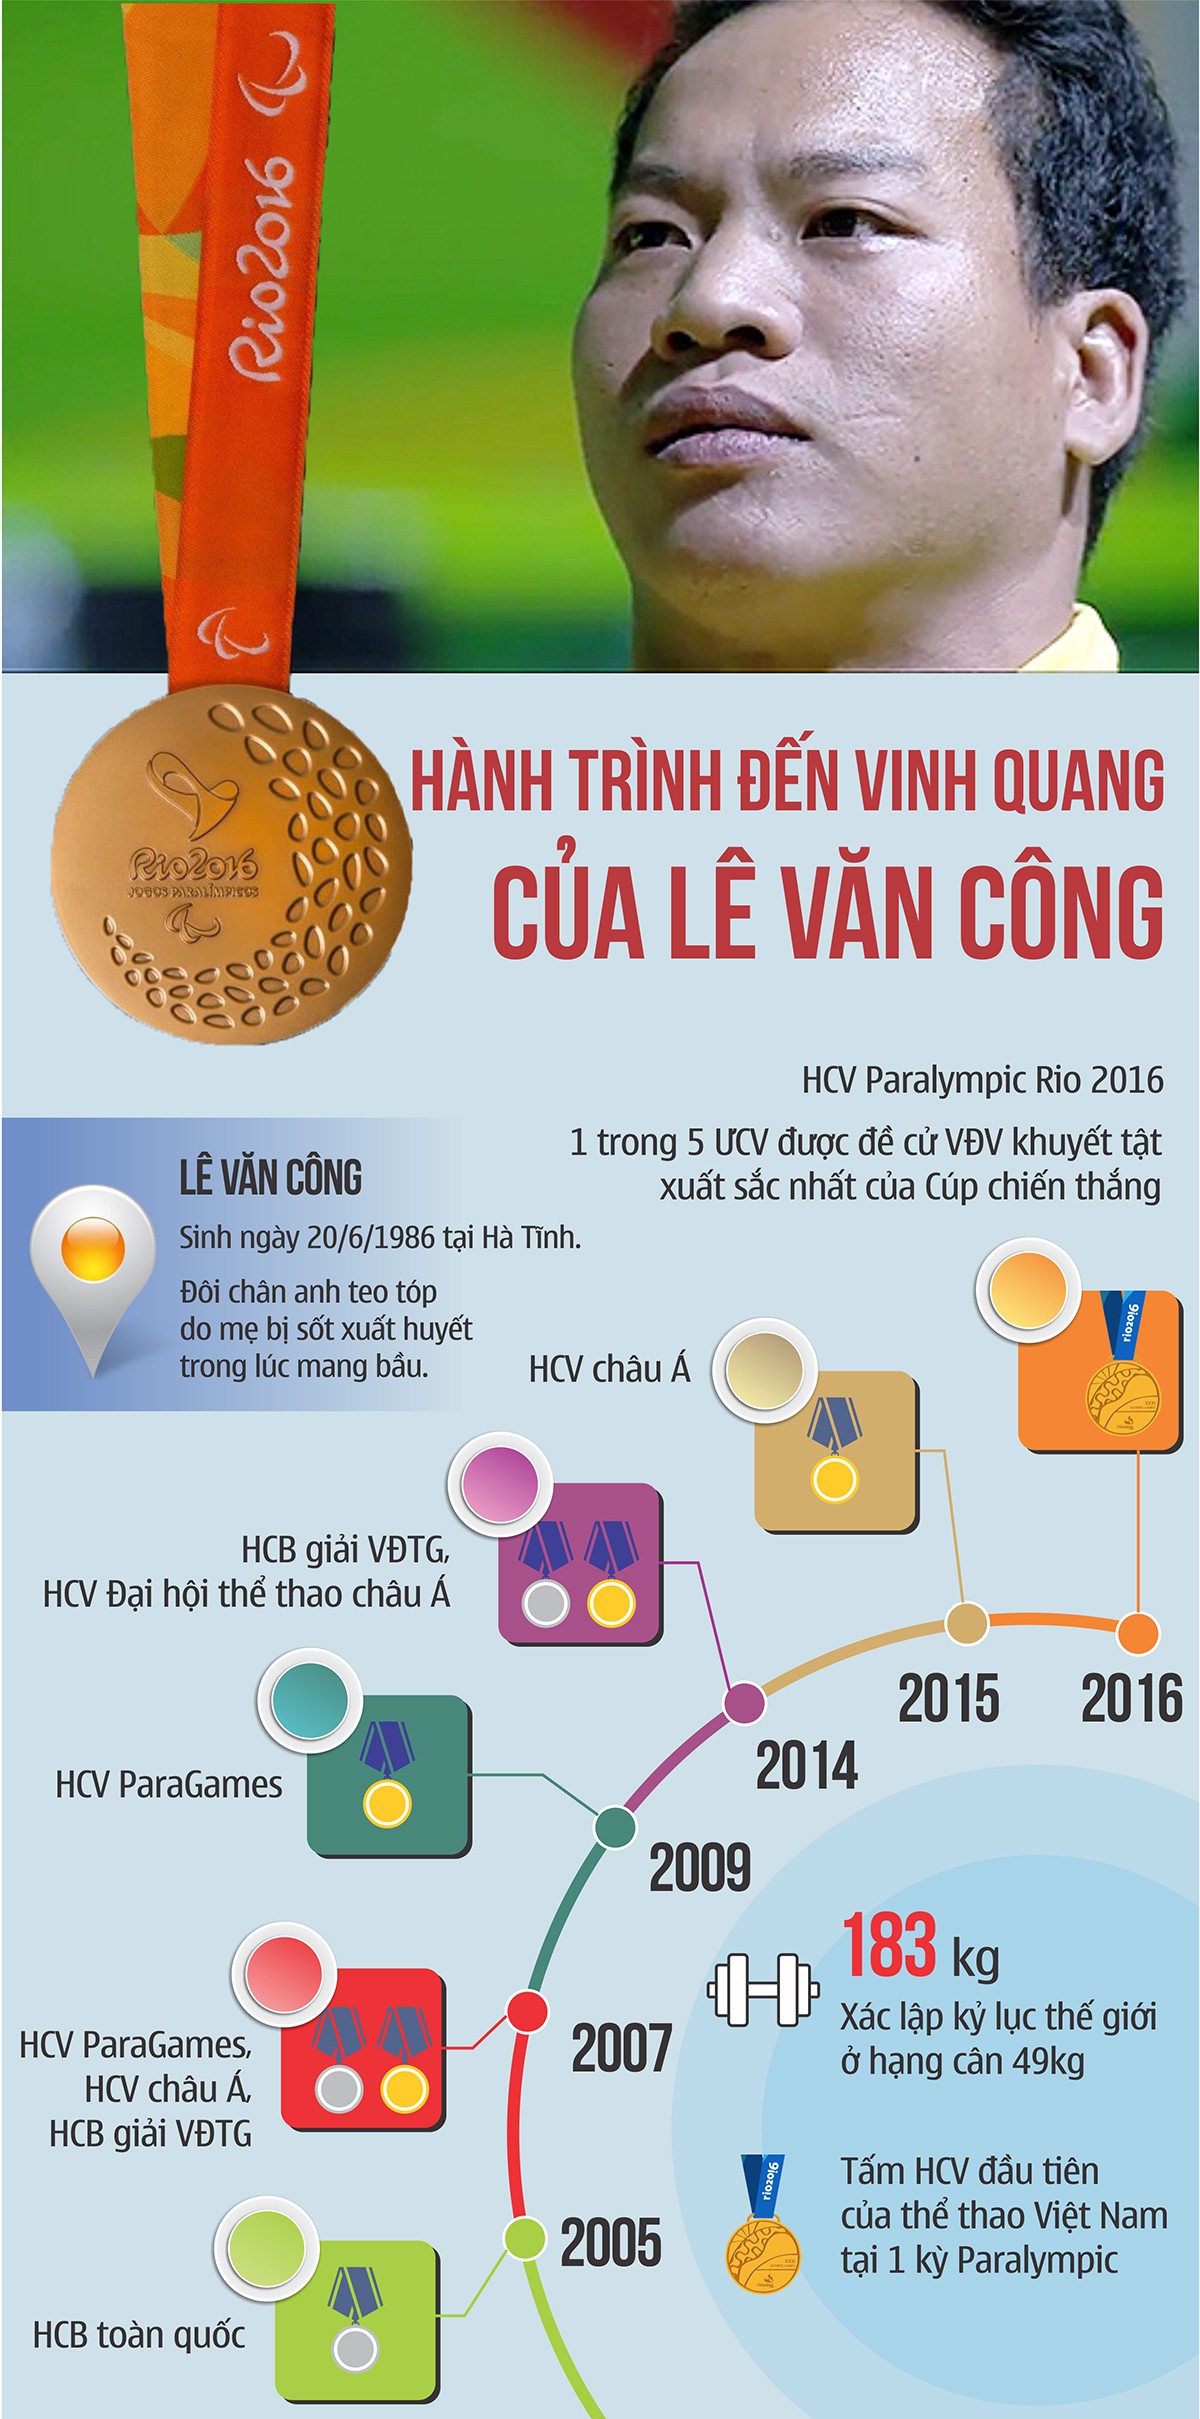 Hành trình nghị lực của Lê Văn Công đến vinh quang Paralympic 2016